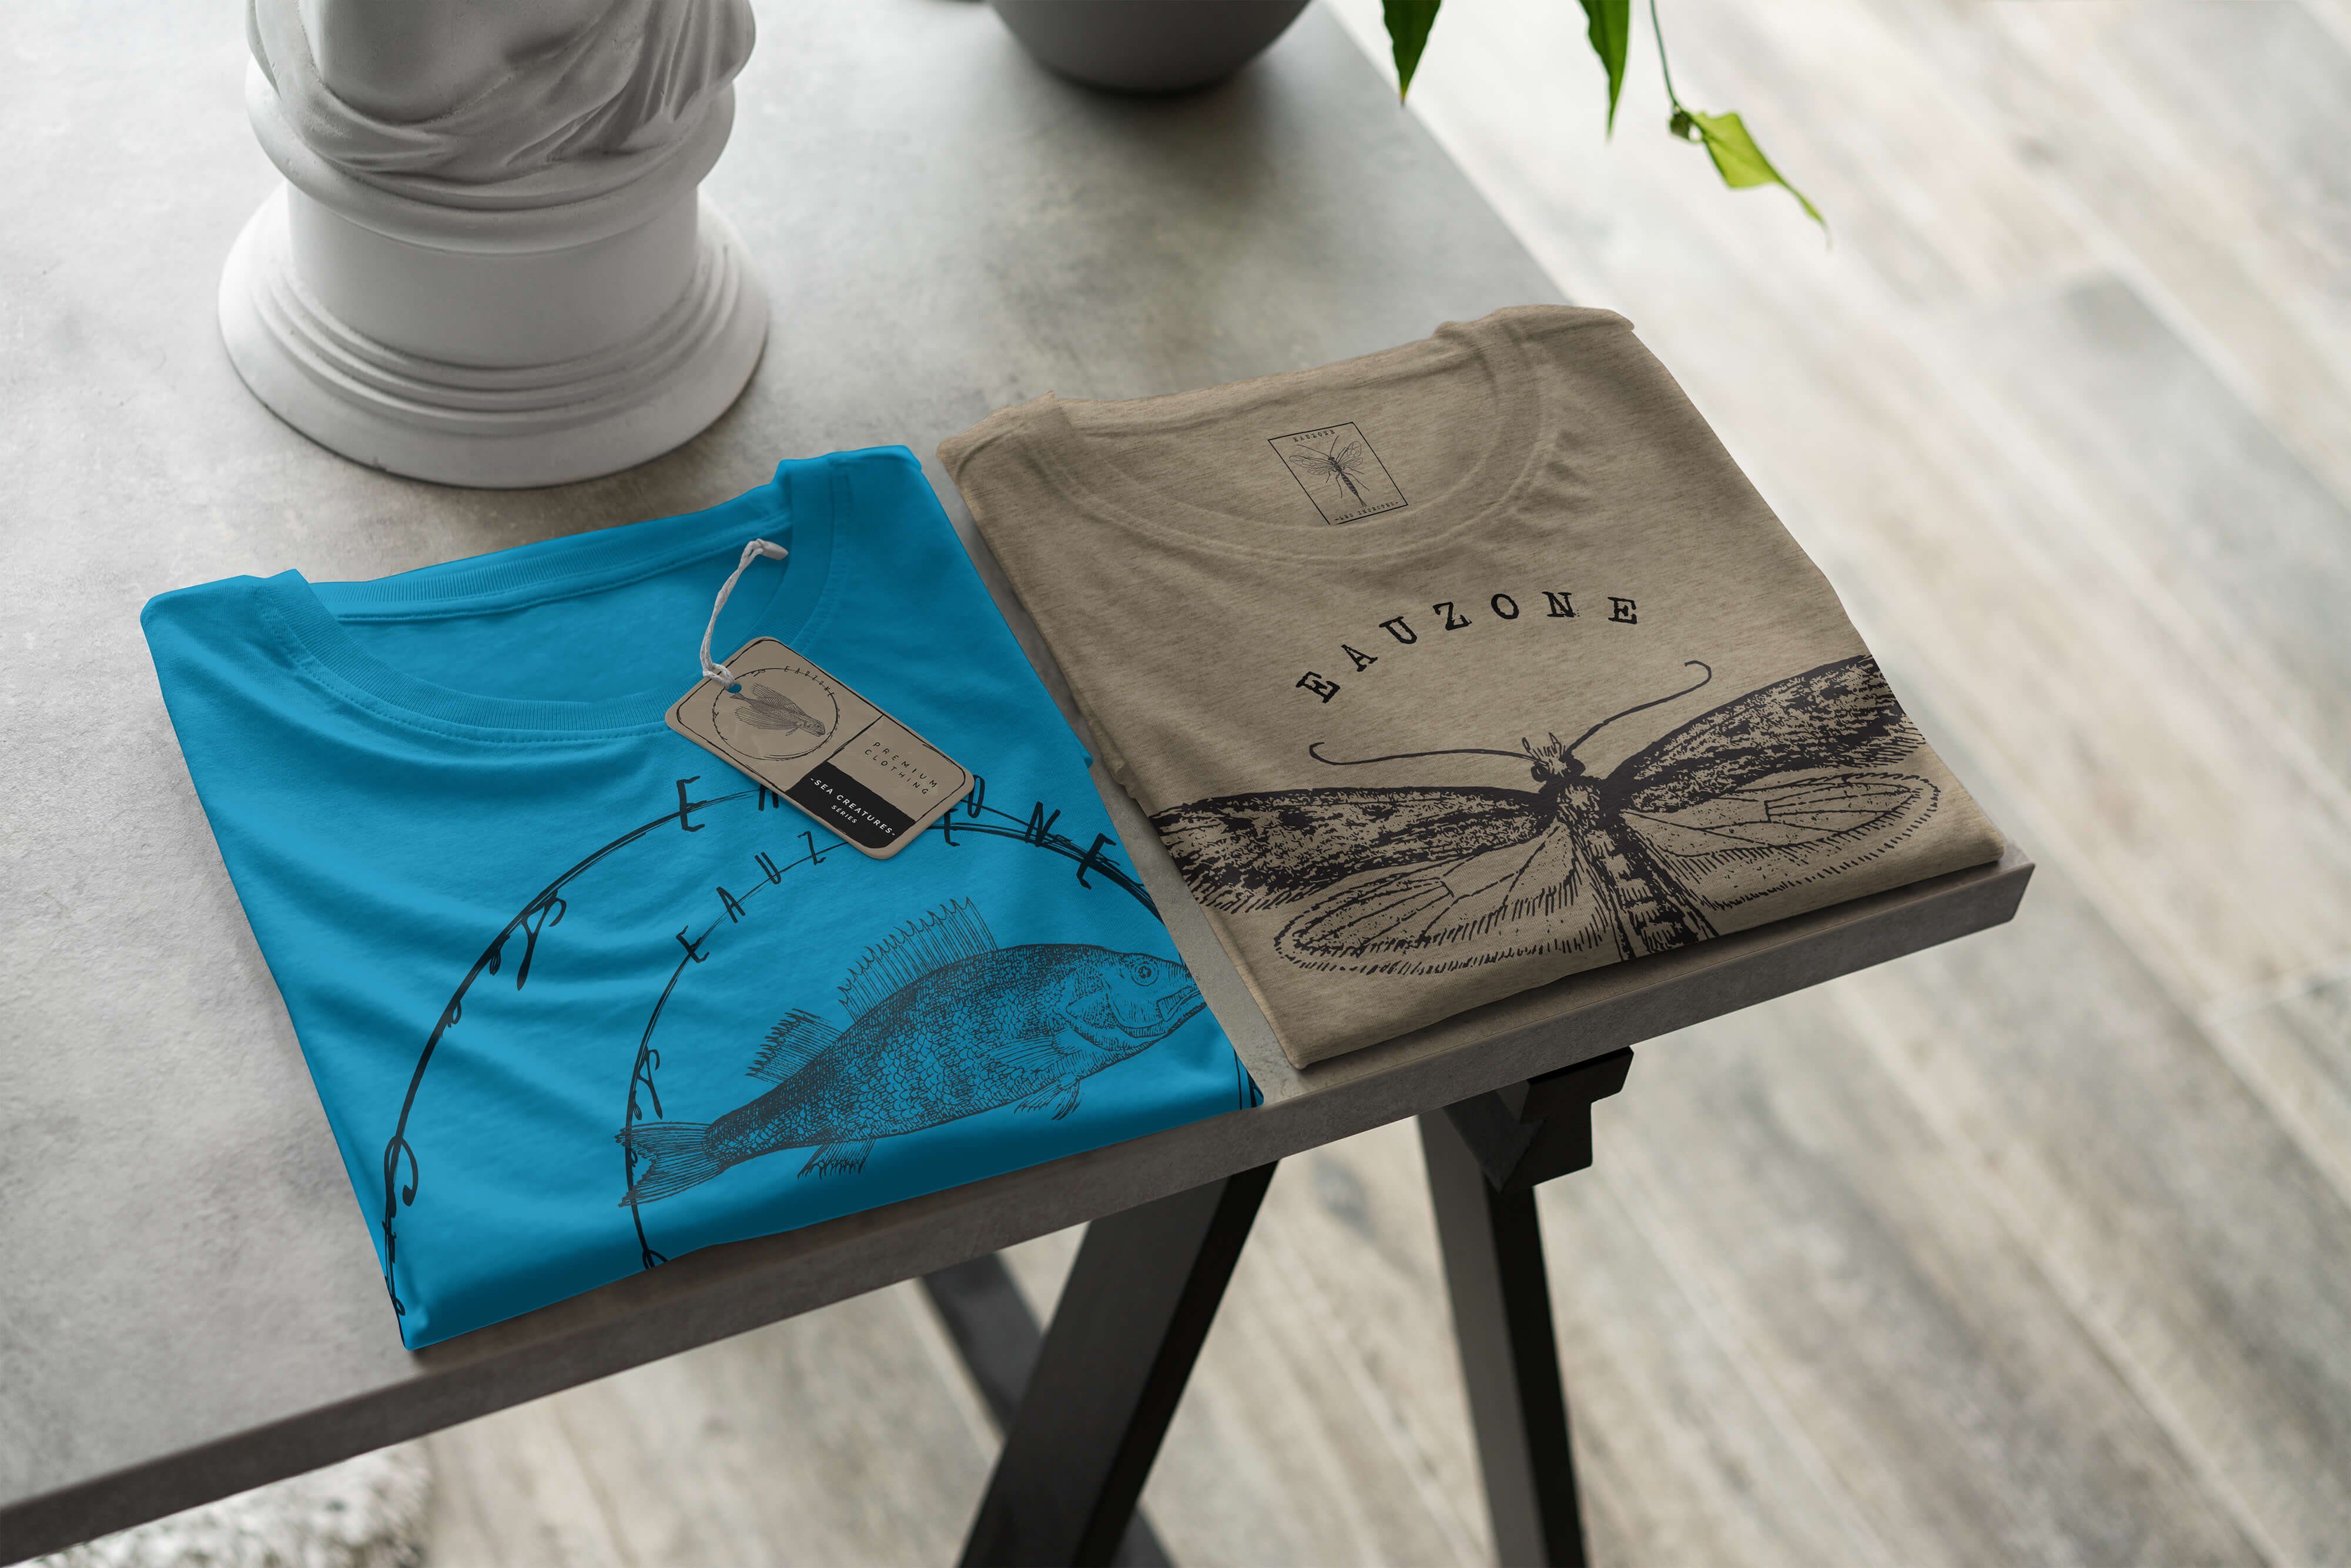 Sinus Art T-Shirt Fische Sea 076 Serie: Sea feine - Struktur sportlicher T-Shirt Schnitt / Creatures, und Tiefsee Atoll